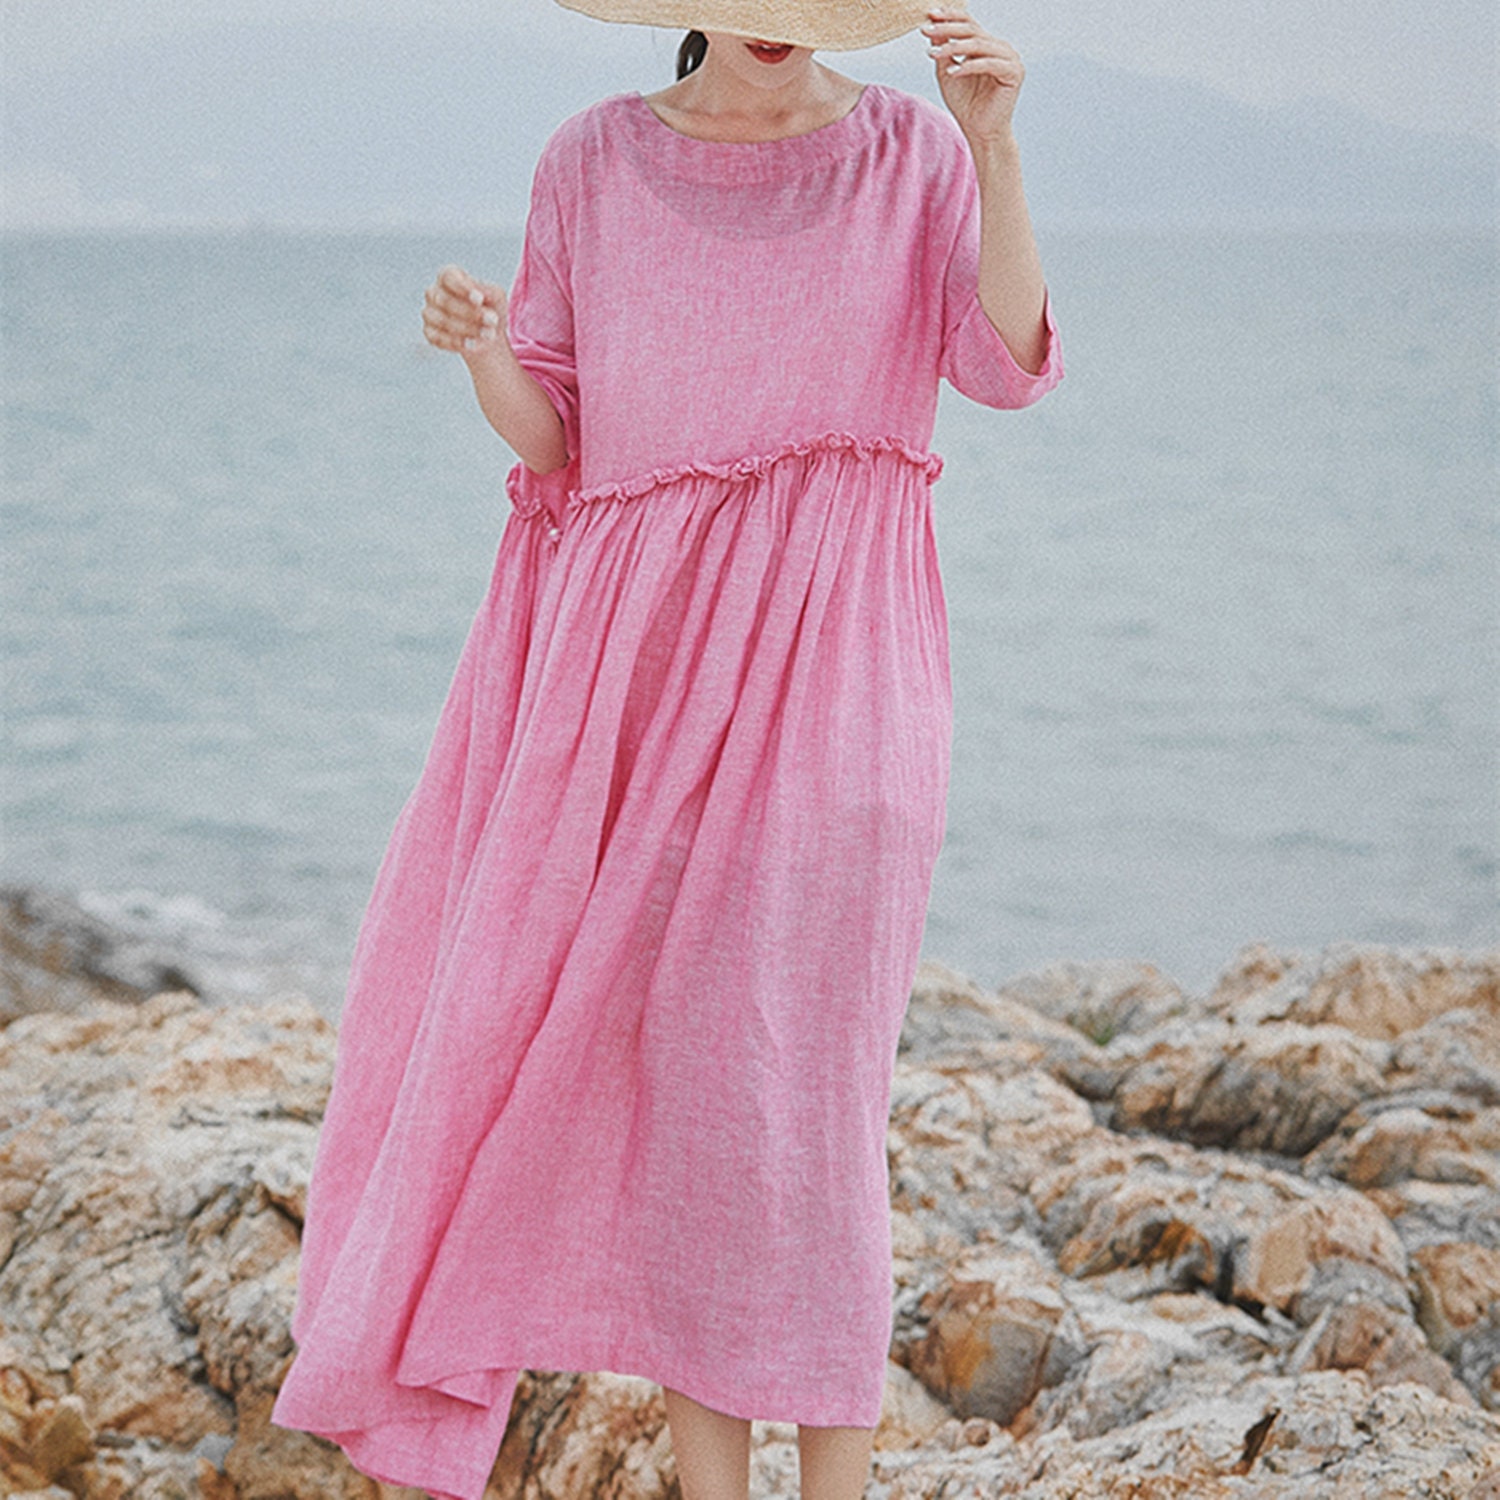 Pink linen dresscausal dresssummer beach dresslinen tunic | Etsy